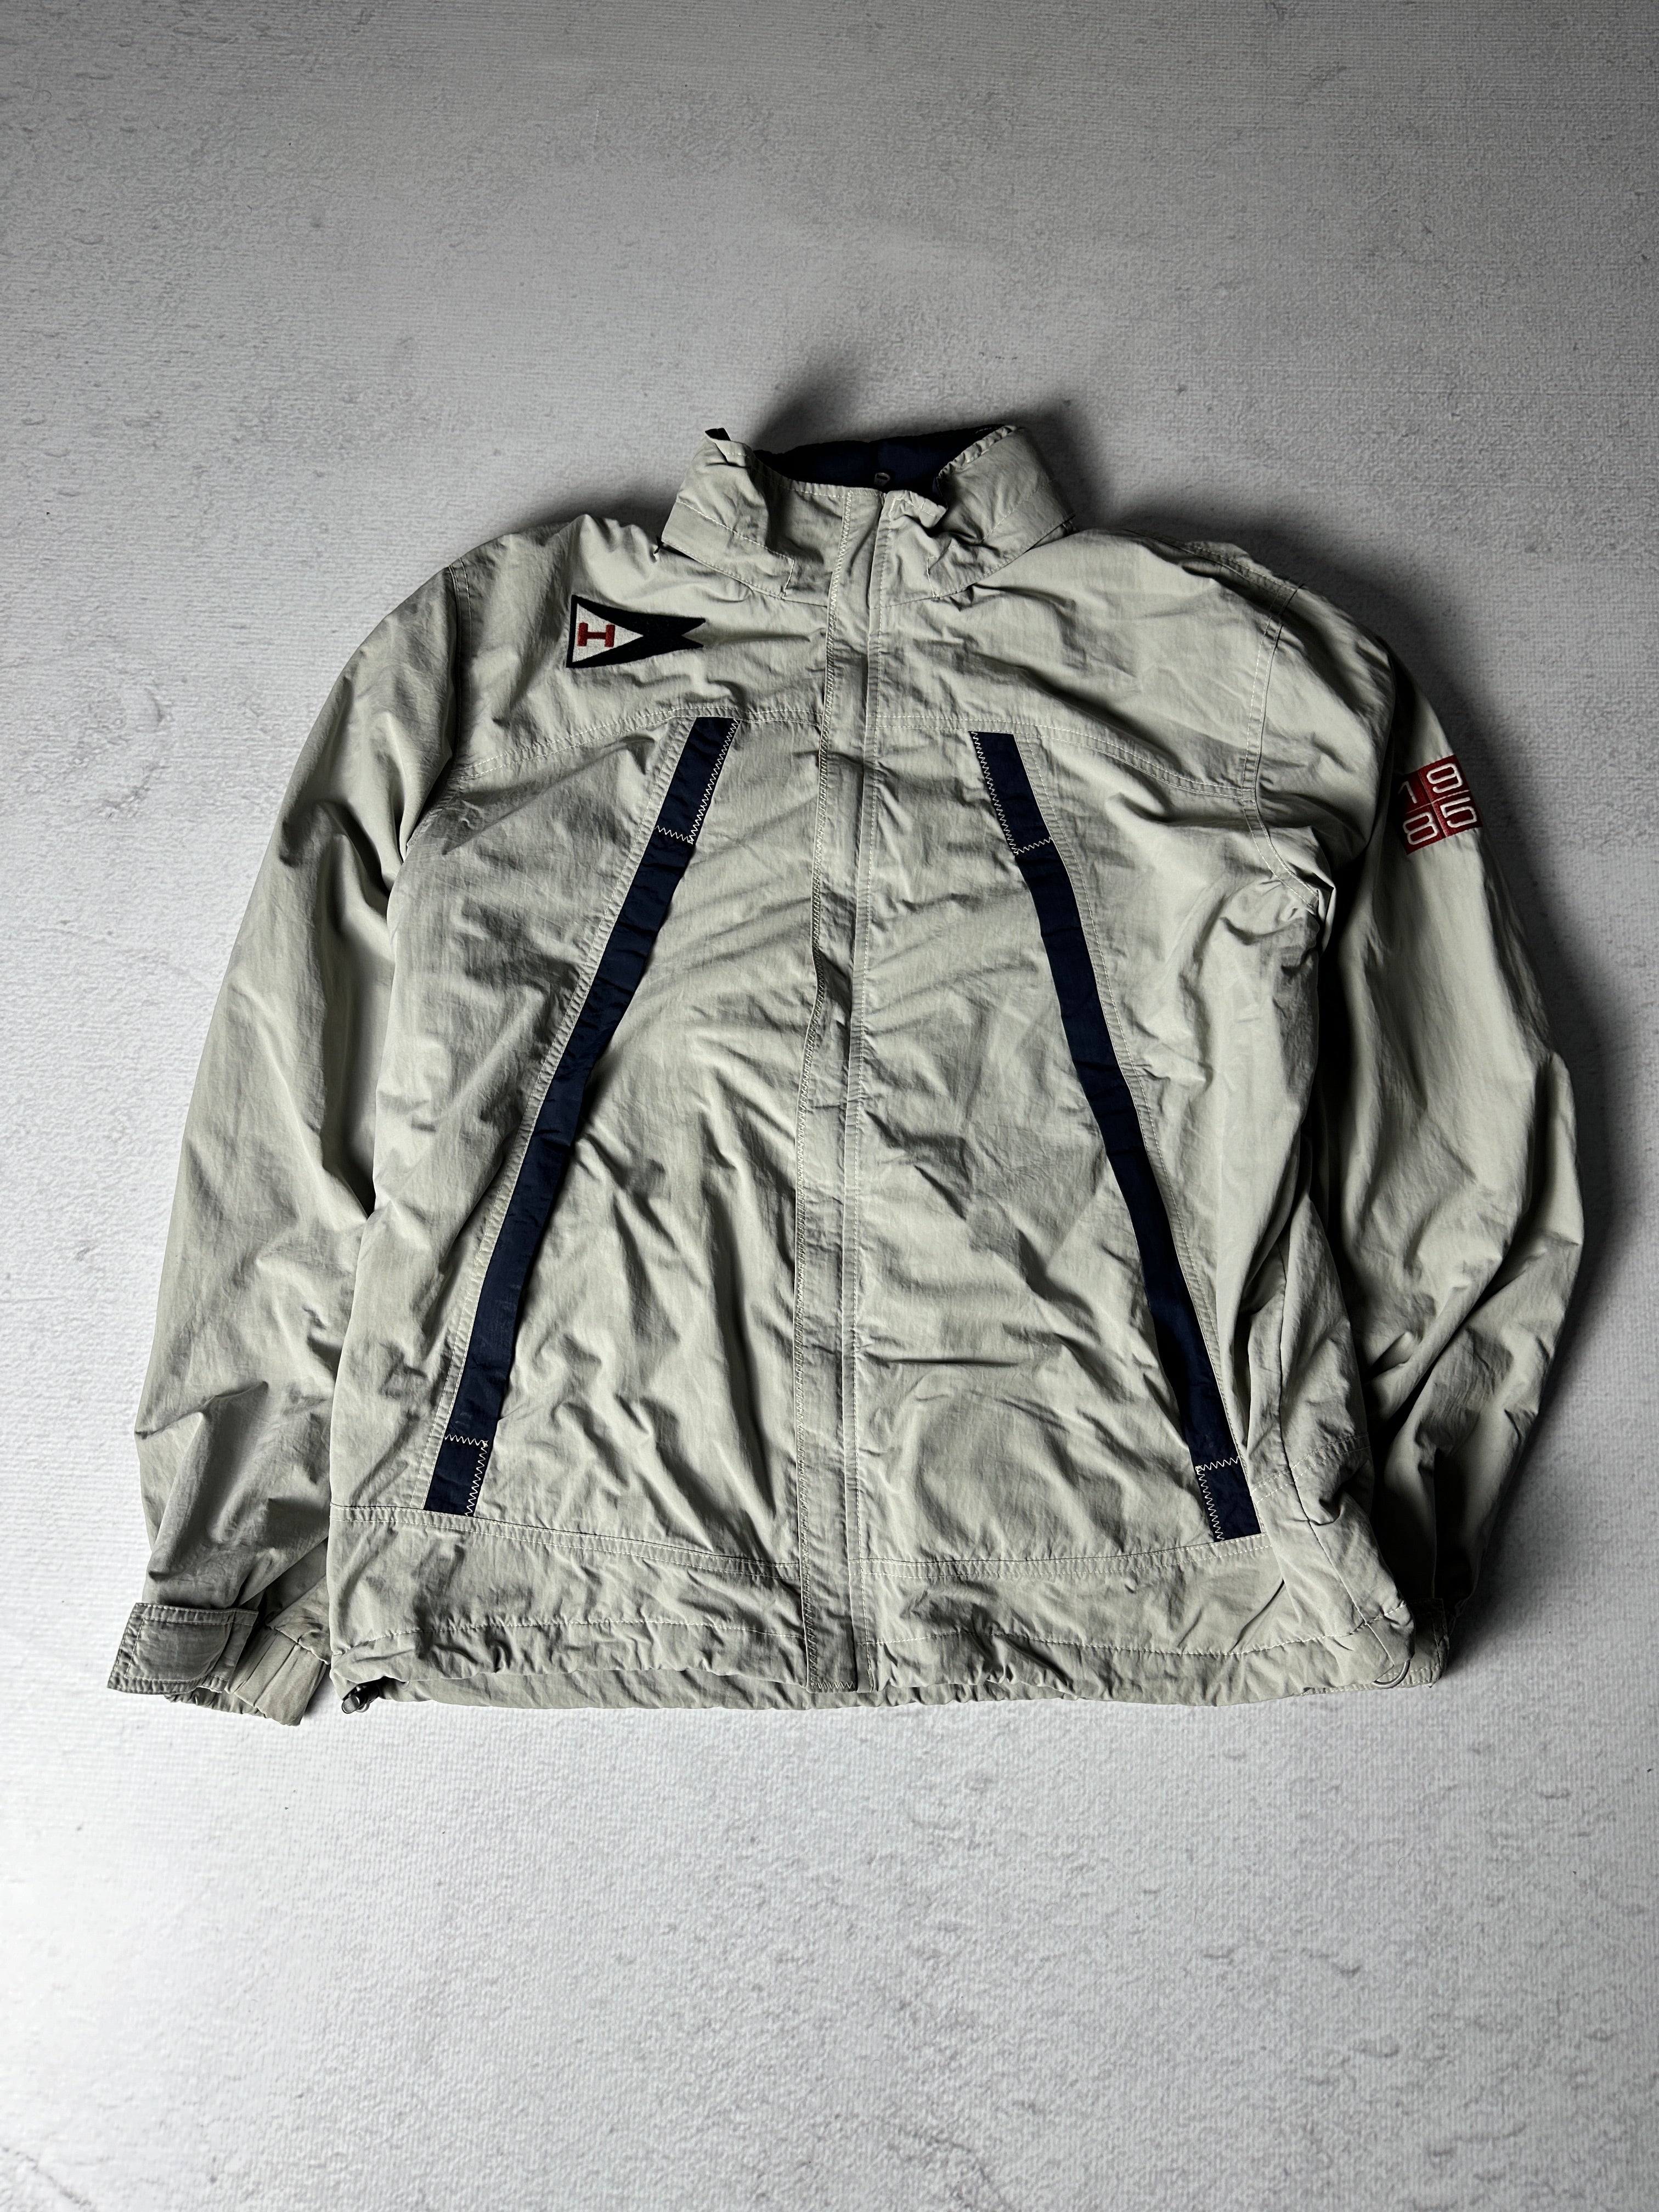 Vintage Tommy Hilfiger Lightweight Jacket - Men's XL